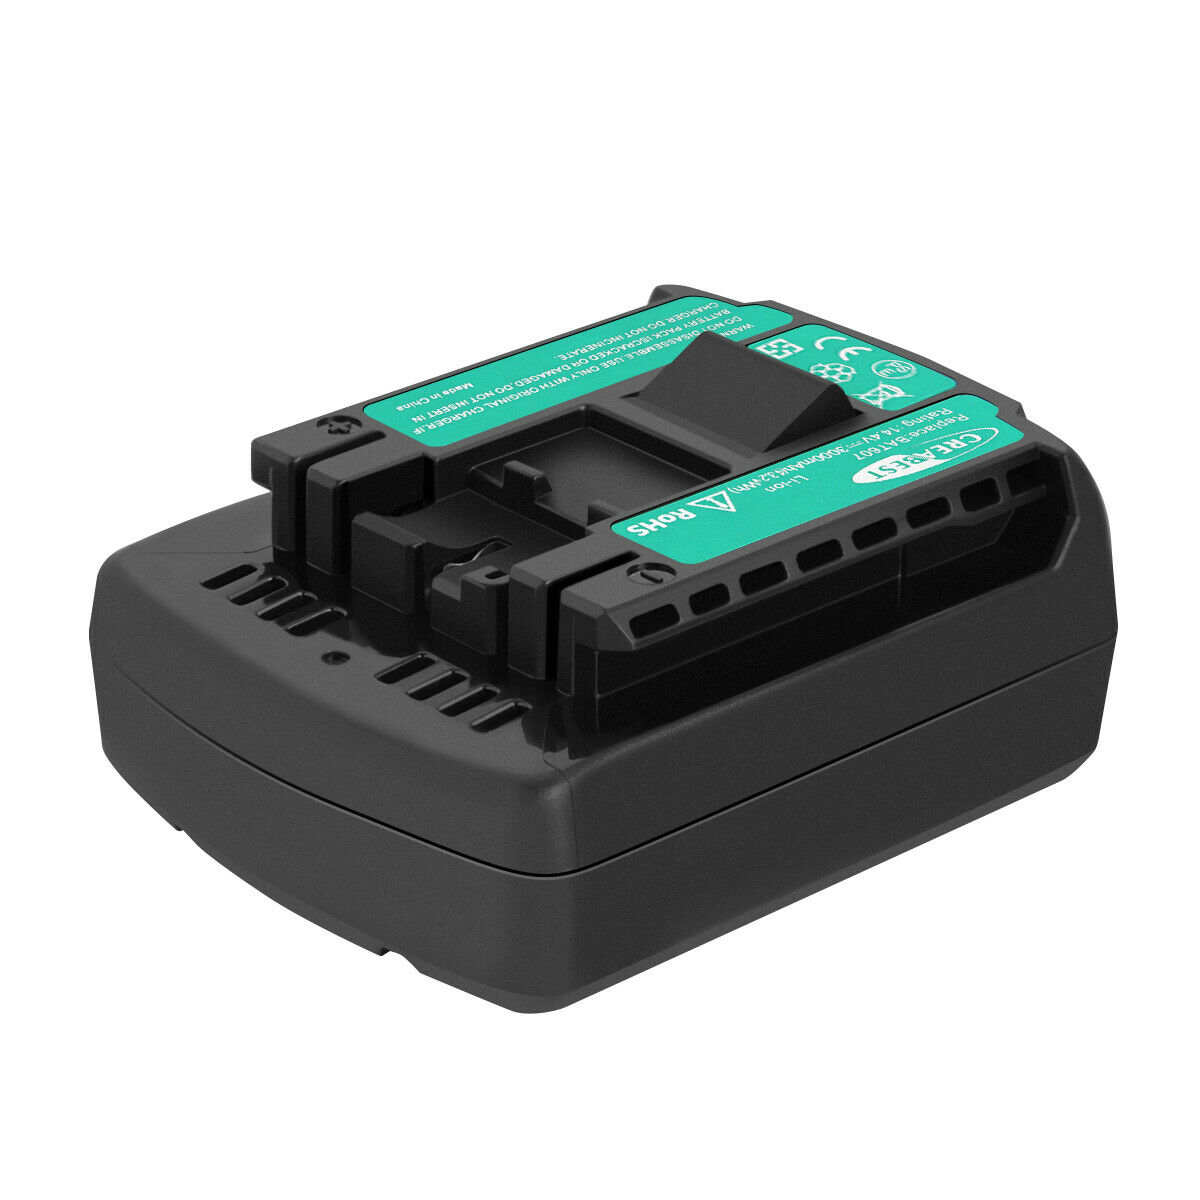 Batterie Bosch DDB180-02,GDR 1080-LI,GDR 14.4 V-LI,GDR 14.4 V-LI MF(compatible)